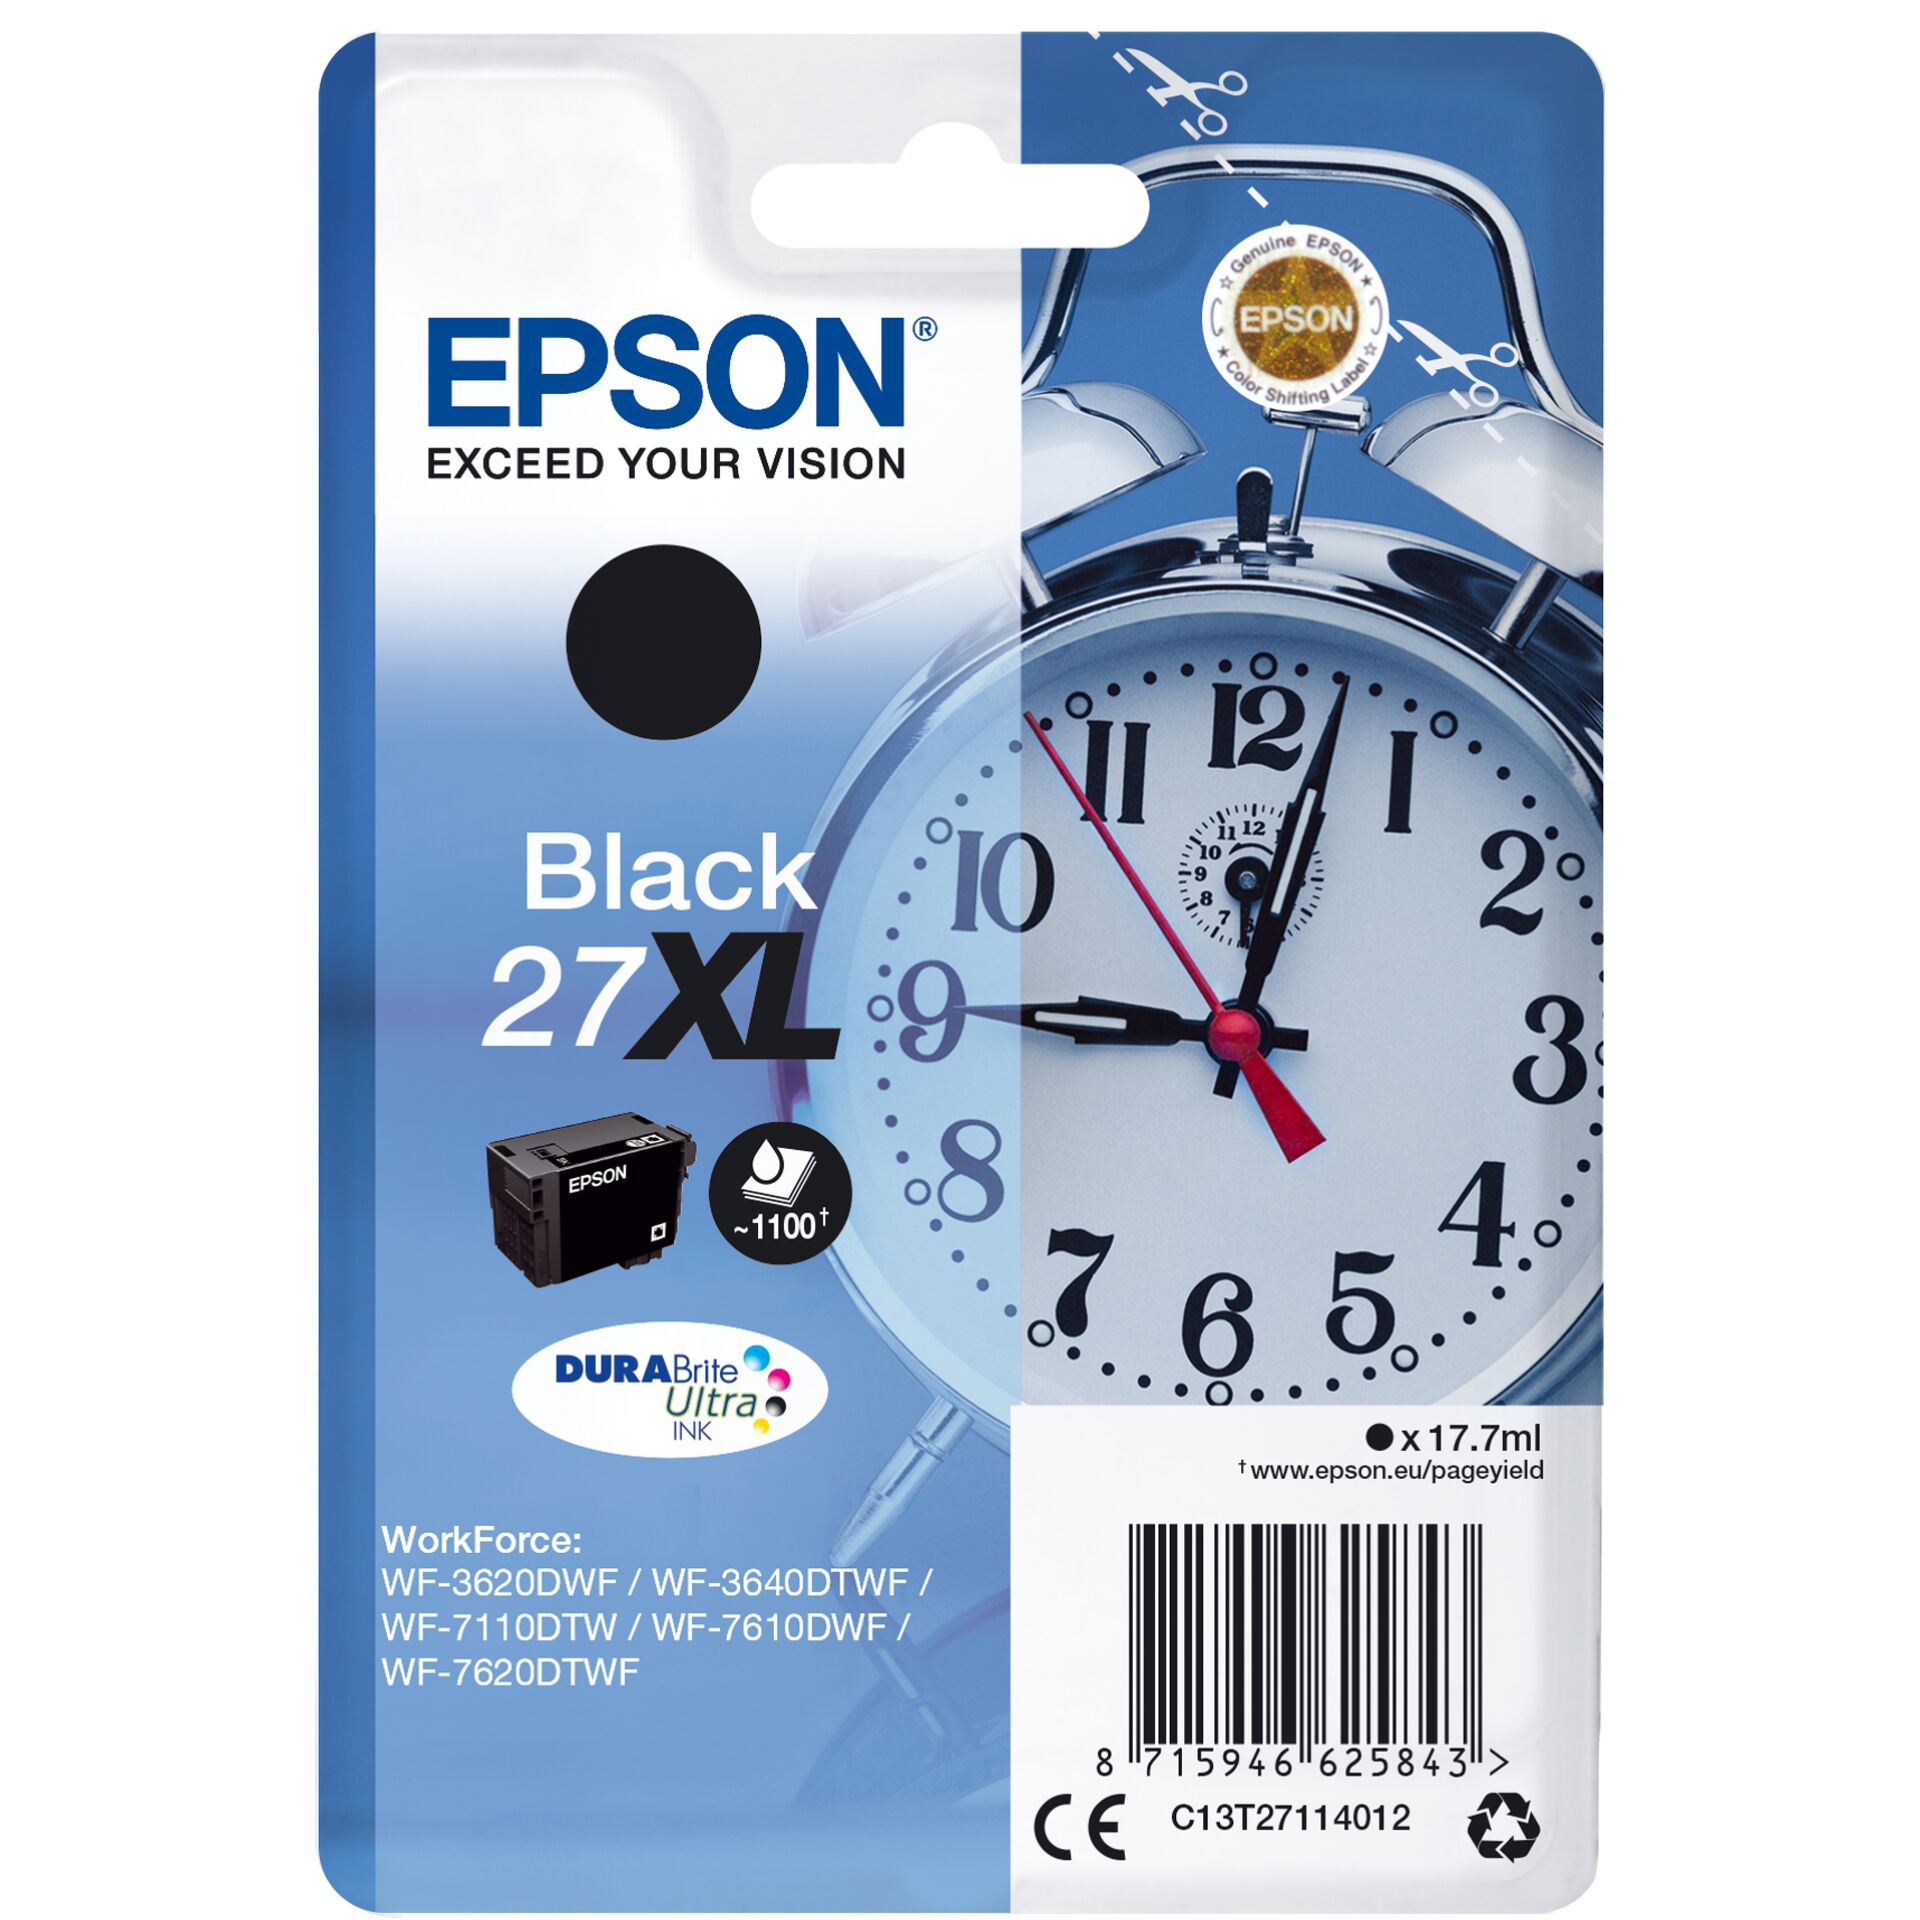 Epson Tinte 27 XL schwarz, 17.7ml 1100 Seiten Tintenpatrone 